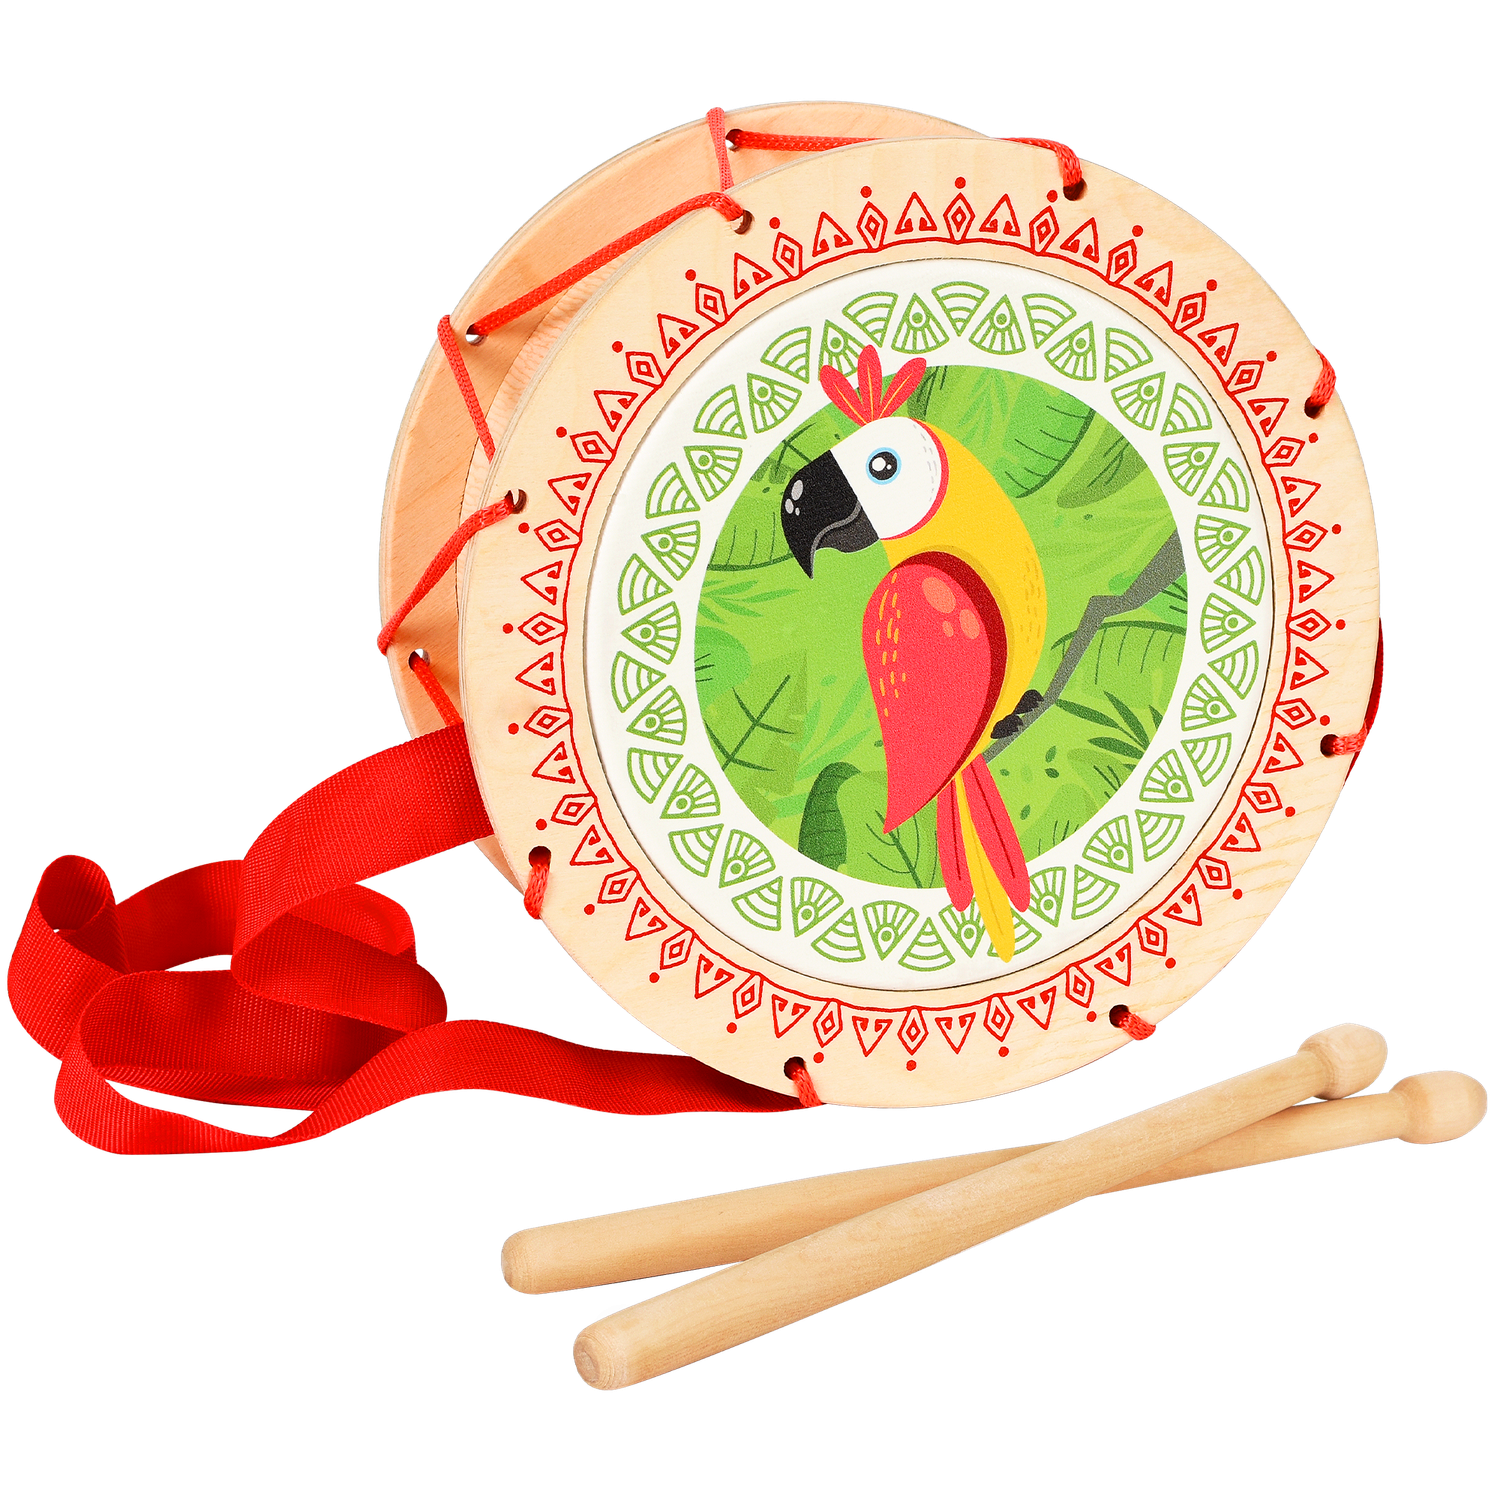 Музыкальный инструмент детский Мега Тойс деревянный барабан игрушка Попугай - фото 1